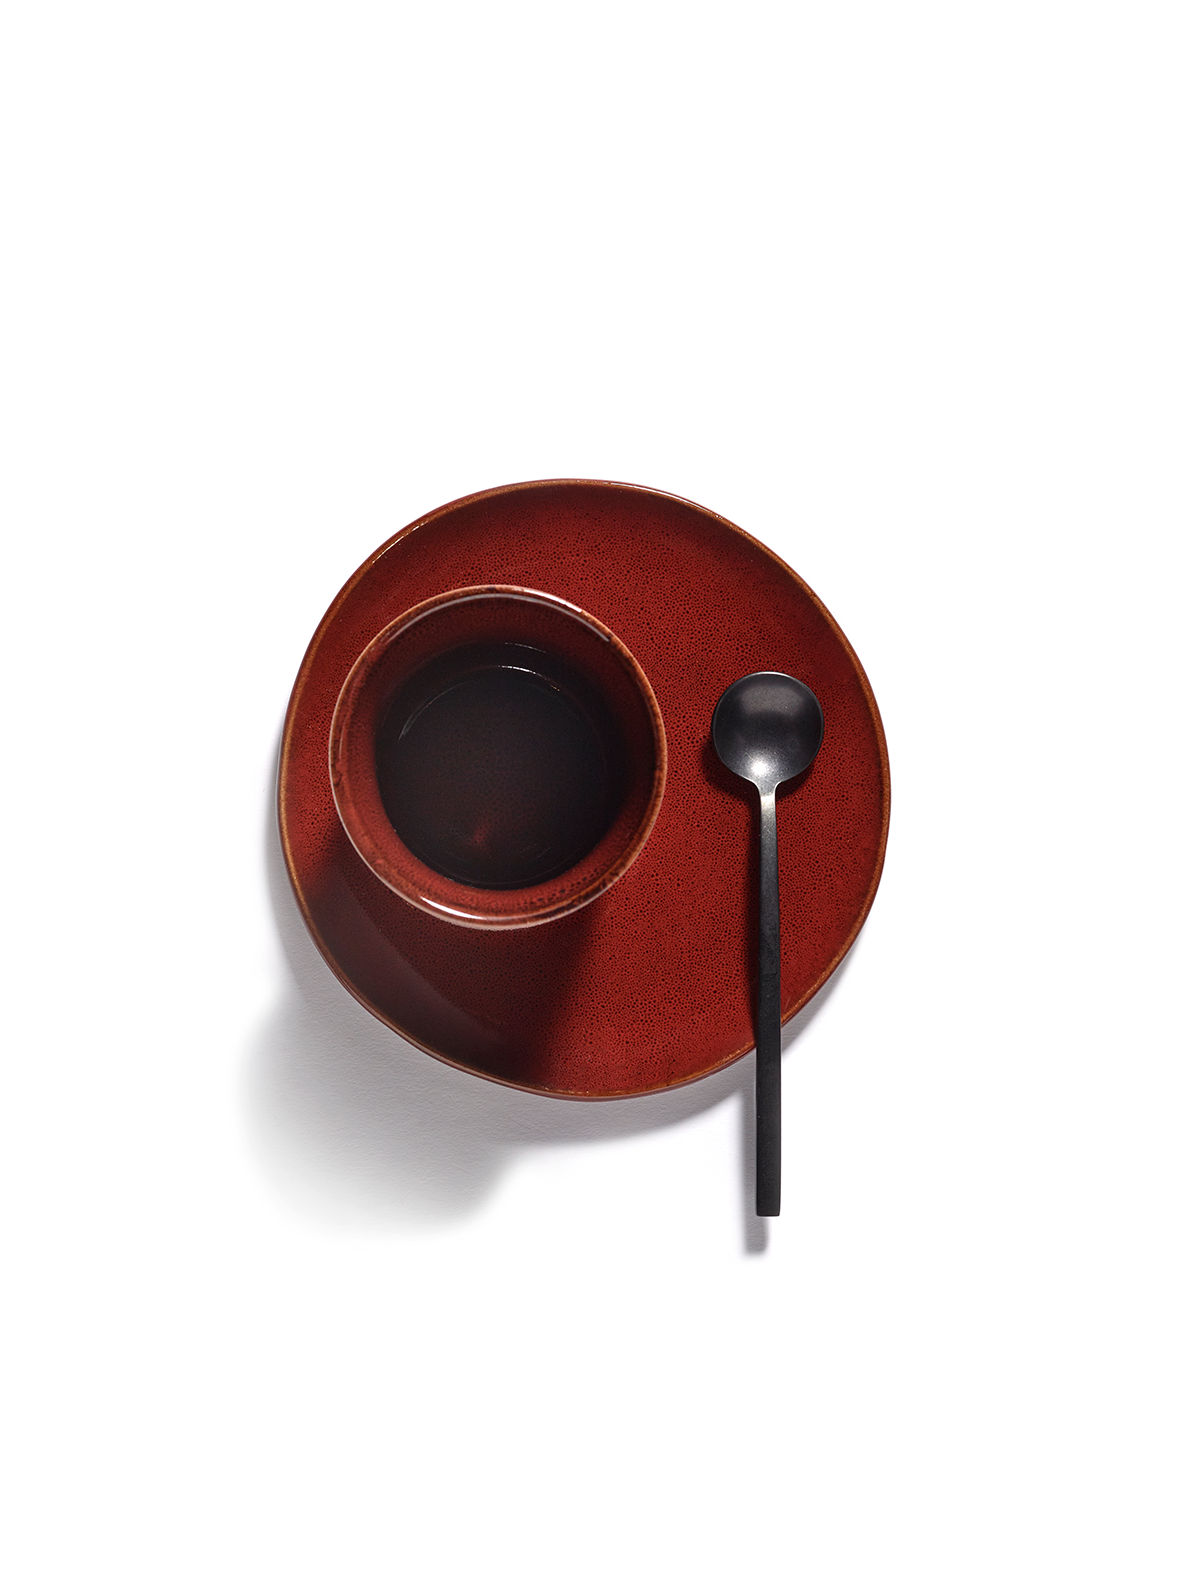 Koffiekop - La Mère by Marie Michielssen -  Venetian red